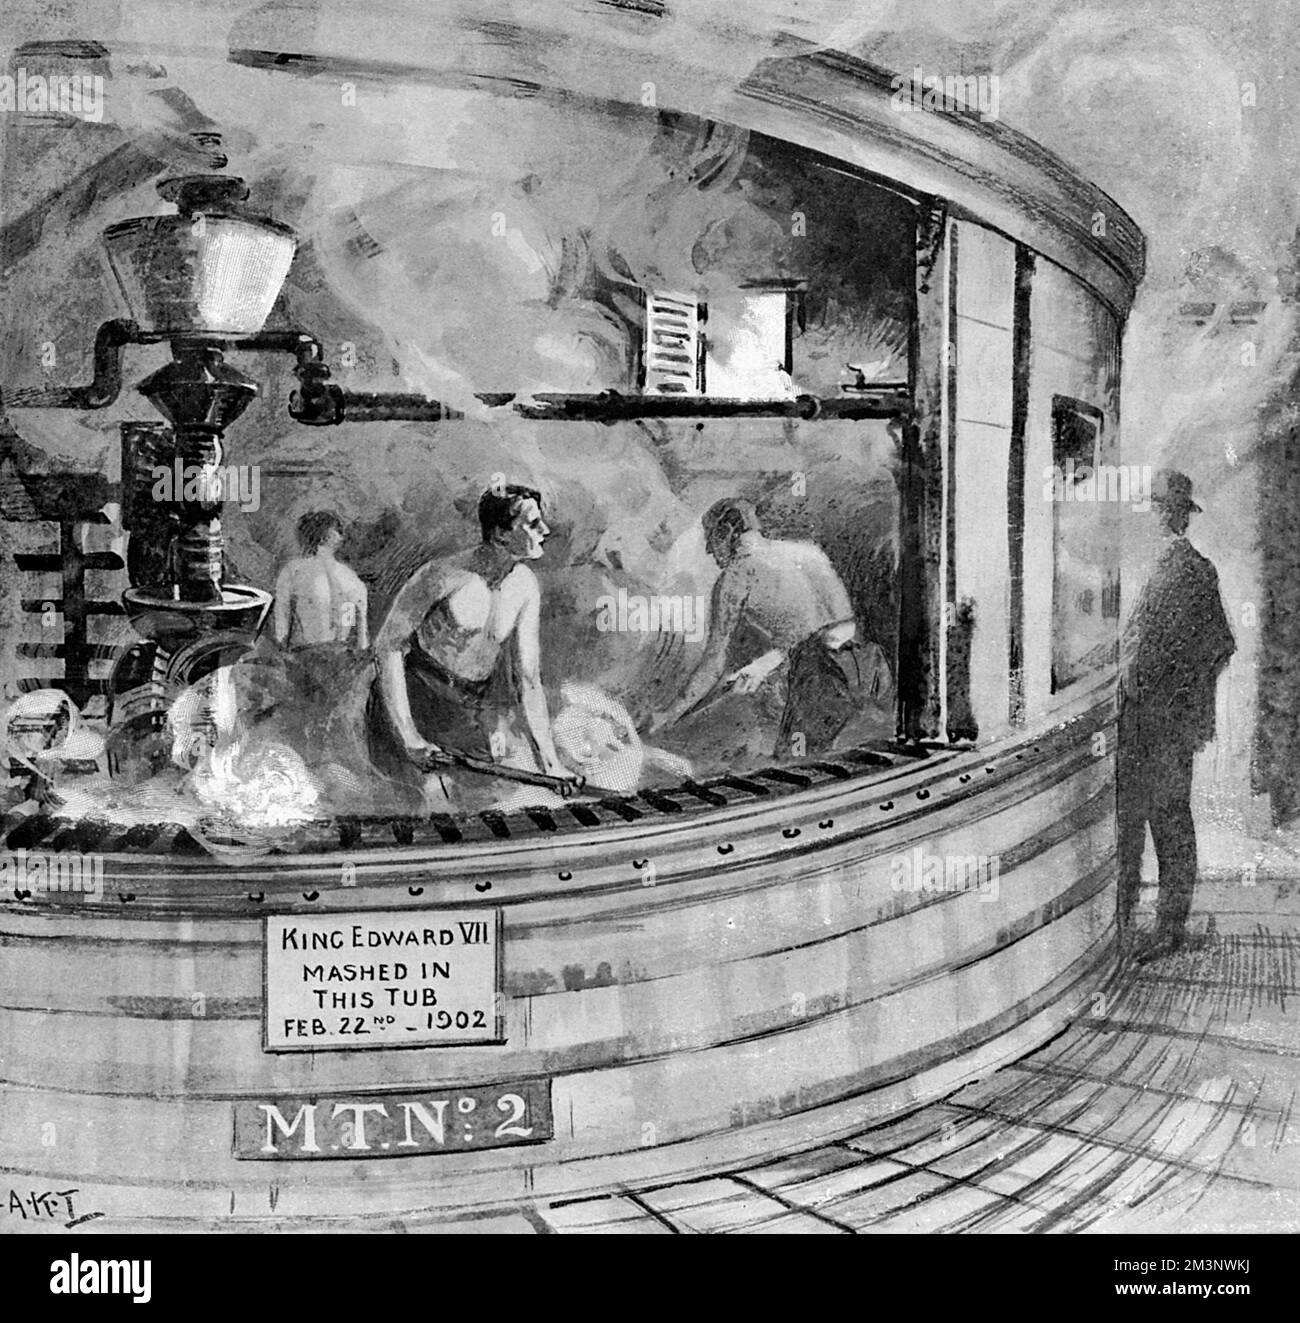 Ripulire la Mash-tub del Re Edoardo di grano esaurito presso la Bass's Brewery, Burton-on-Trent. Edoardo VII aveva visitato la Birreria nel febbraio 1902, tirando le leve che iniziarono una speciale mescolanza di 400 barili di birra extra forte, conosciuta come la 'Ale del Re' 1908 Foto Stock